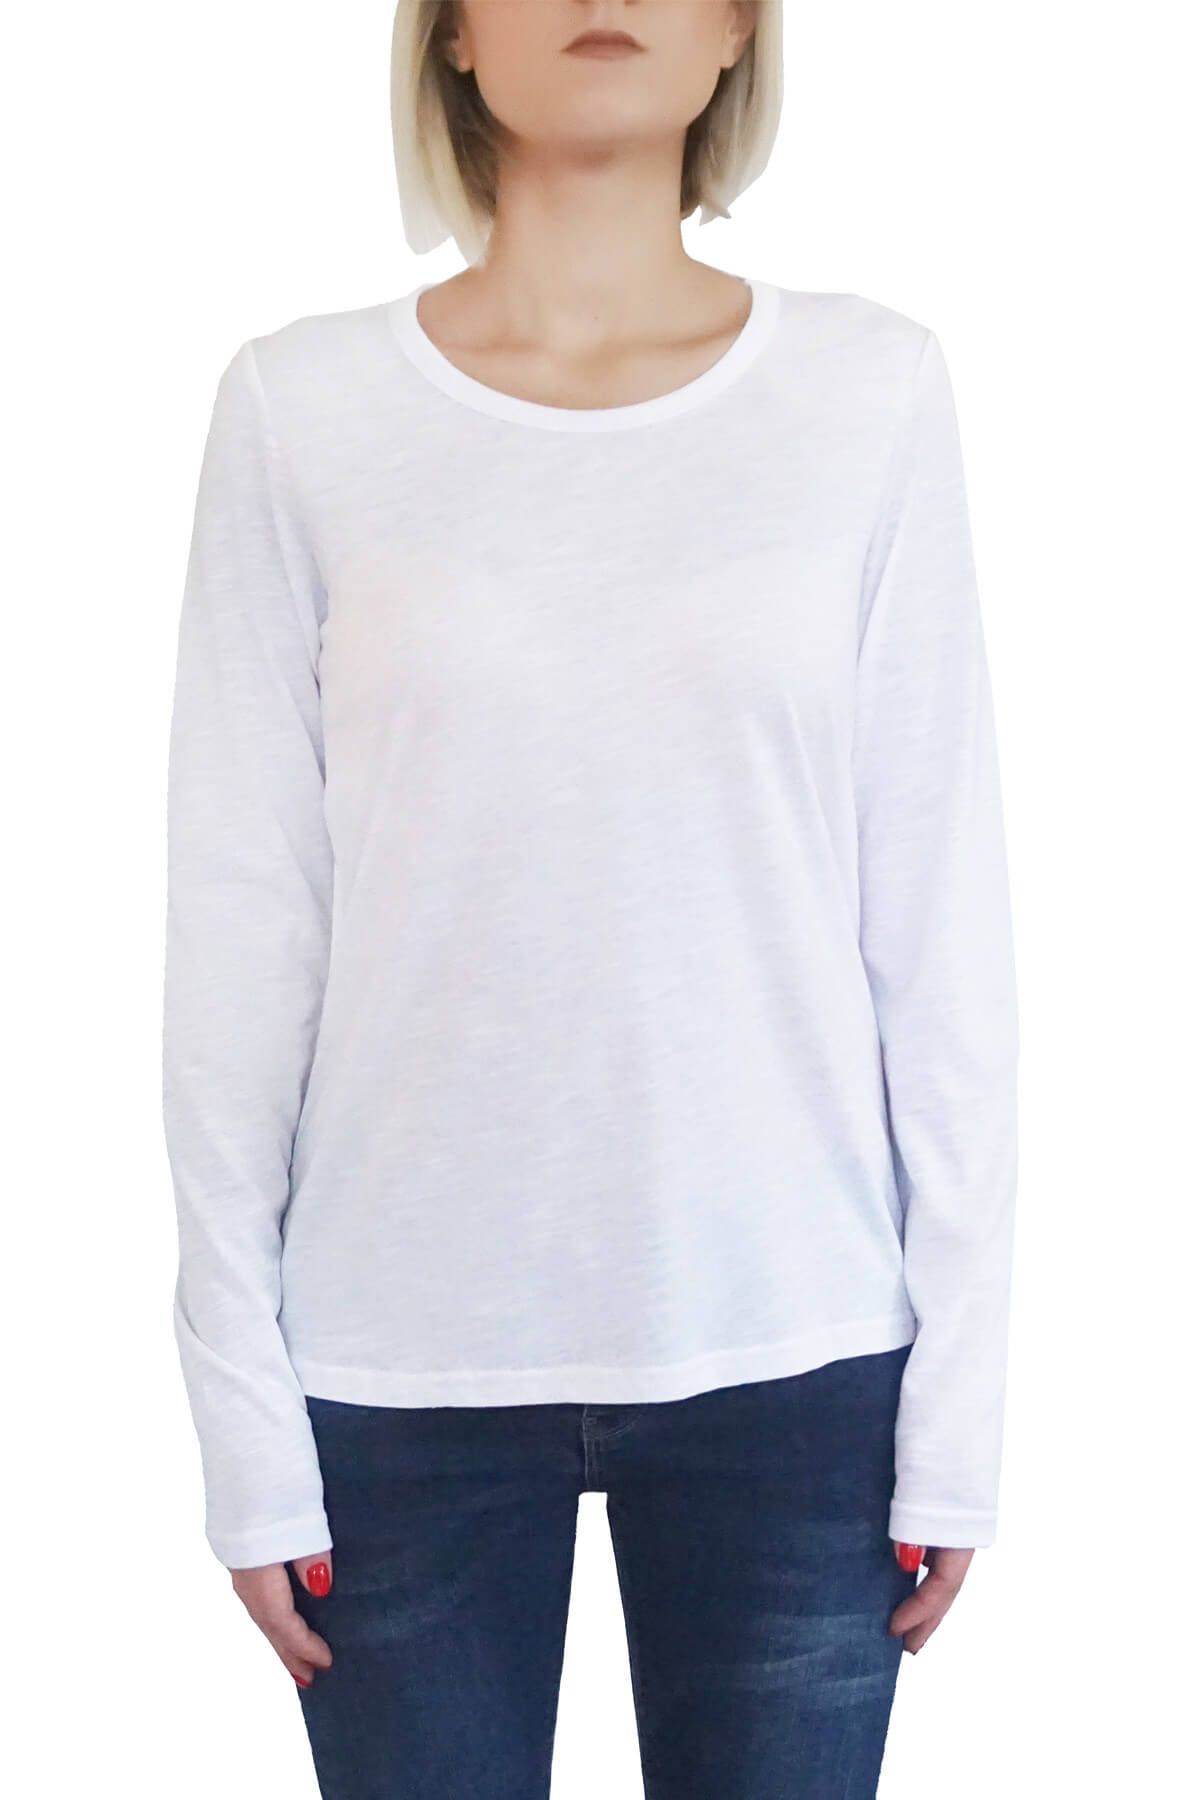 Mof Basics Kadın Beyaz T-Shirt UKSYT-B